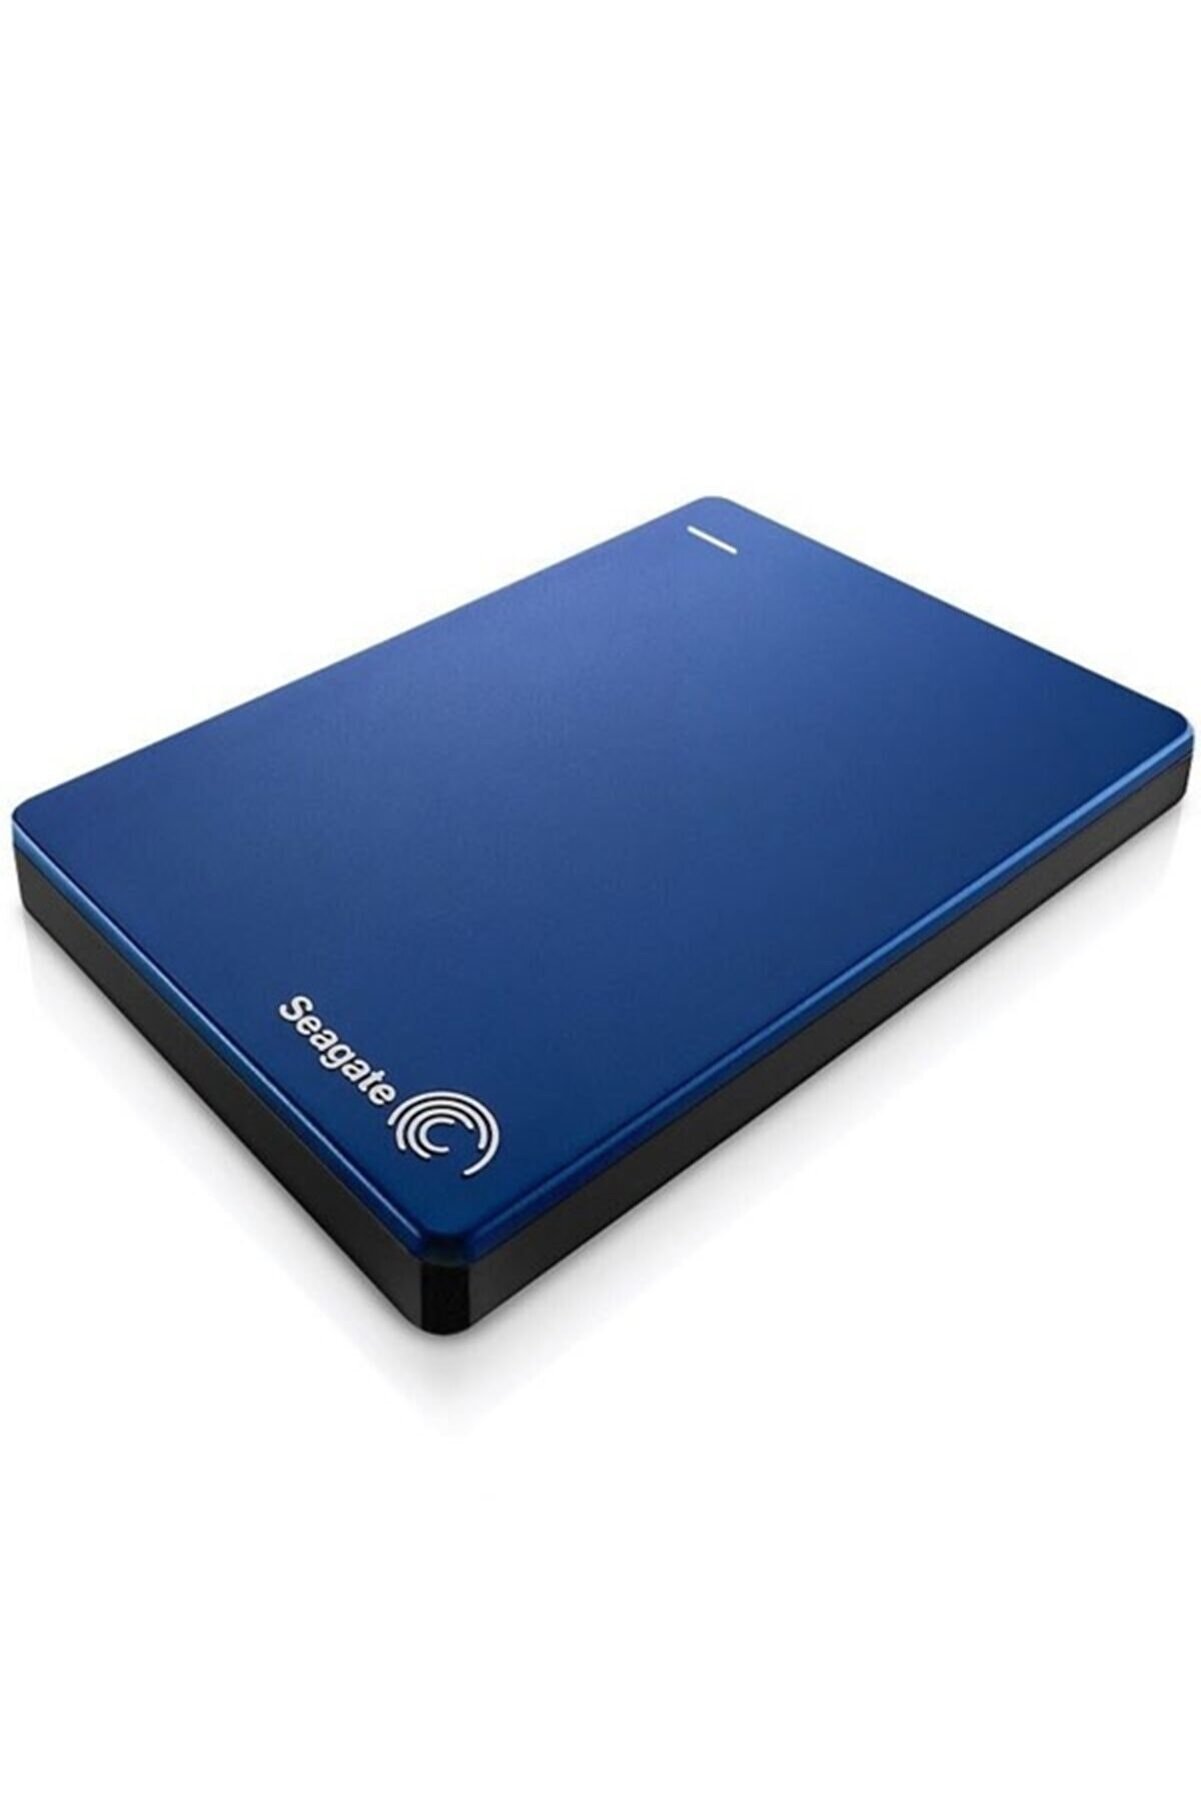 Seagate Backup Plus 2tb 2.5" Usb 3.0 Taşınabilir Disk - Mavi (STDR2000202)